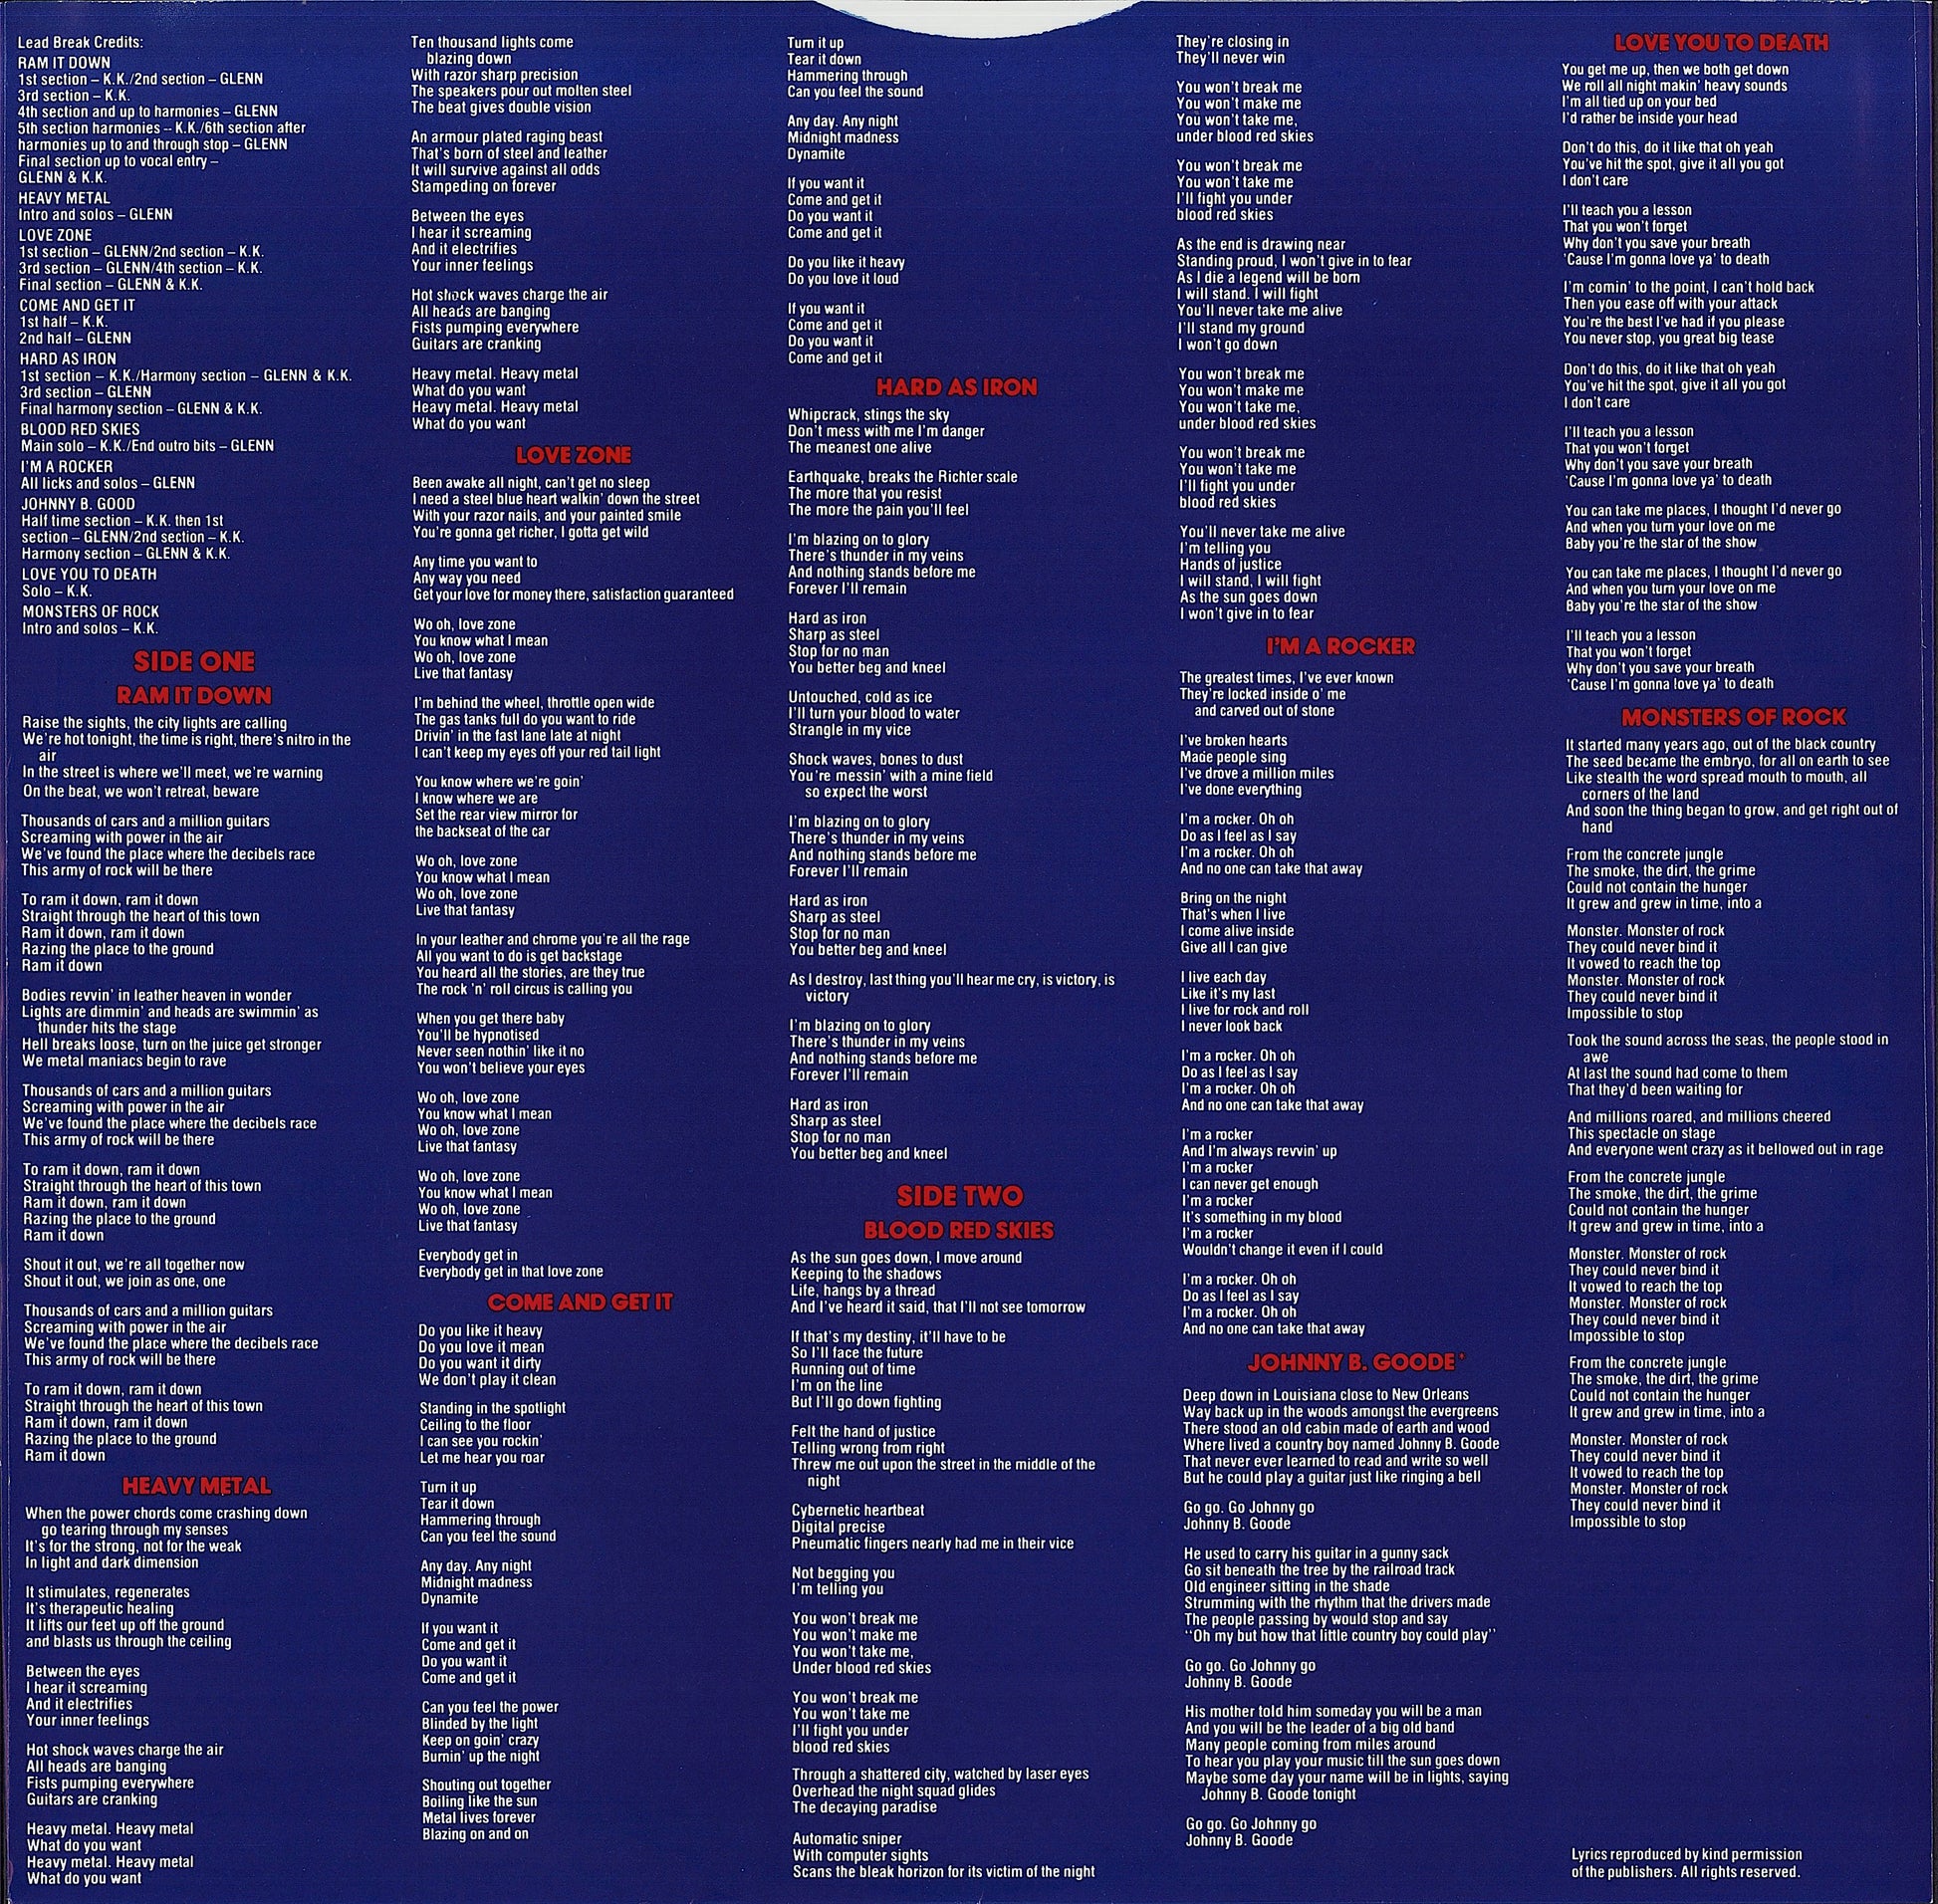 Judas Priest - Ram It Down Vinyl LP